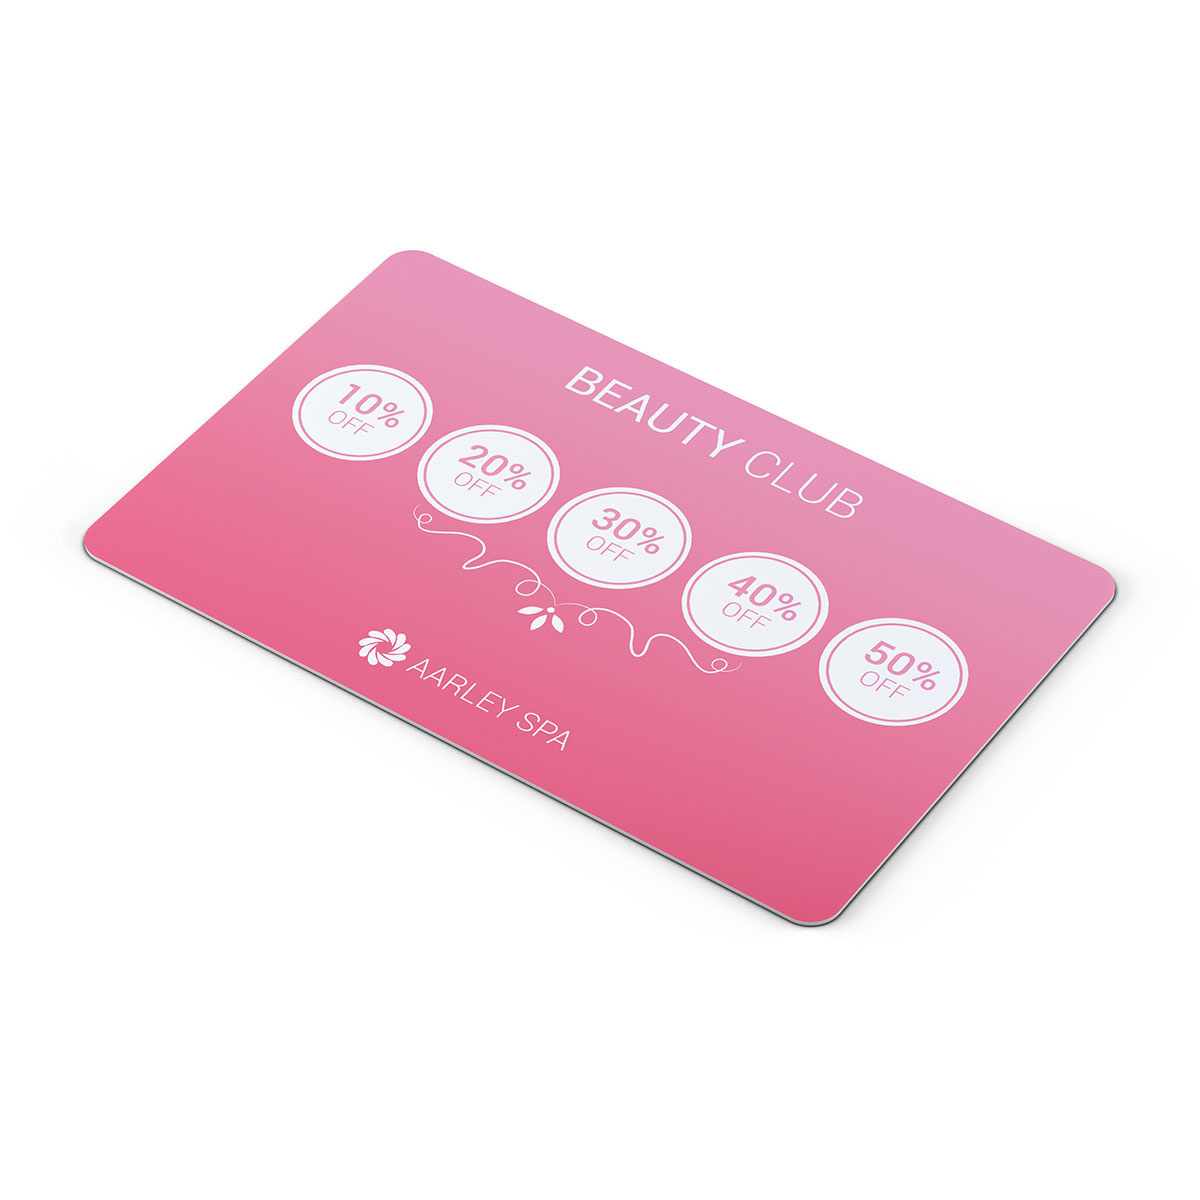 beauty-club-plastic-loyalty-card